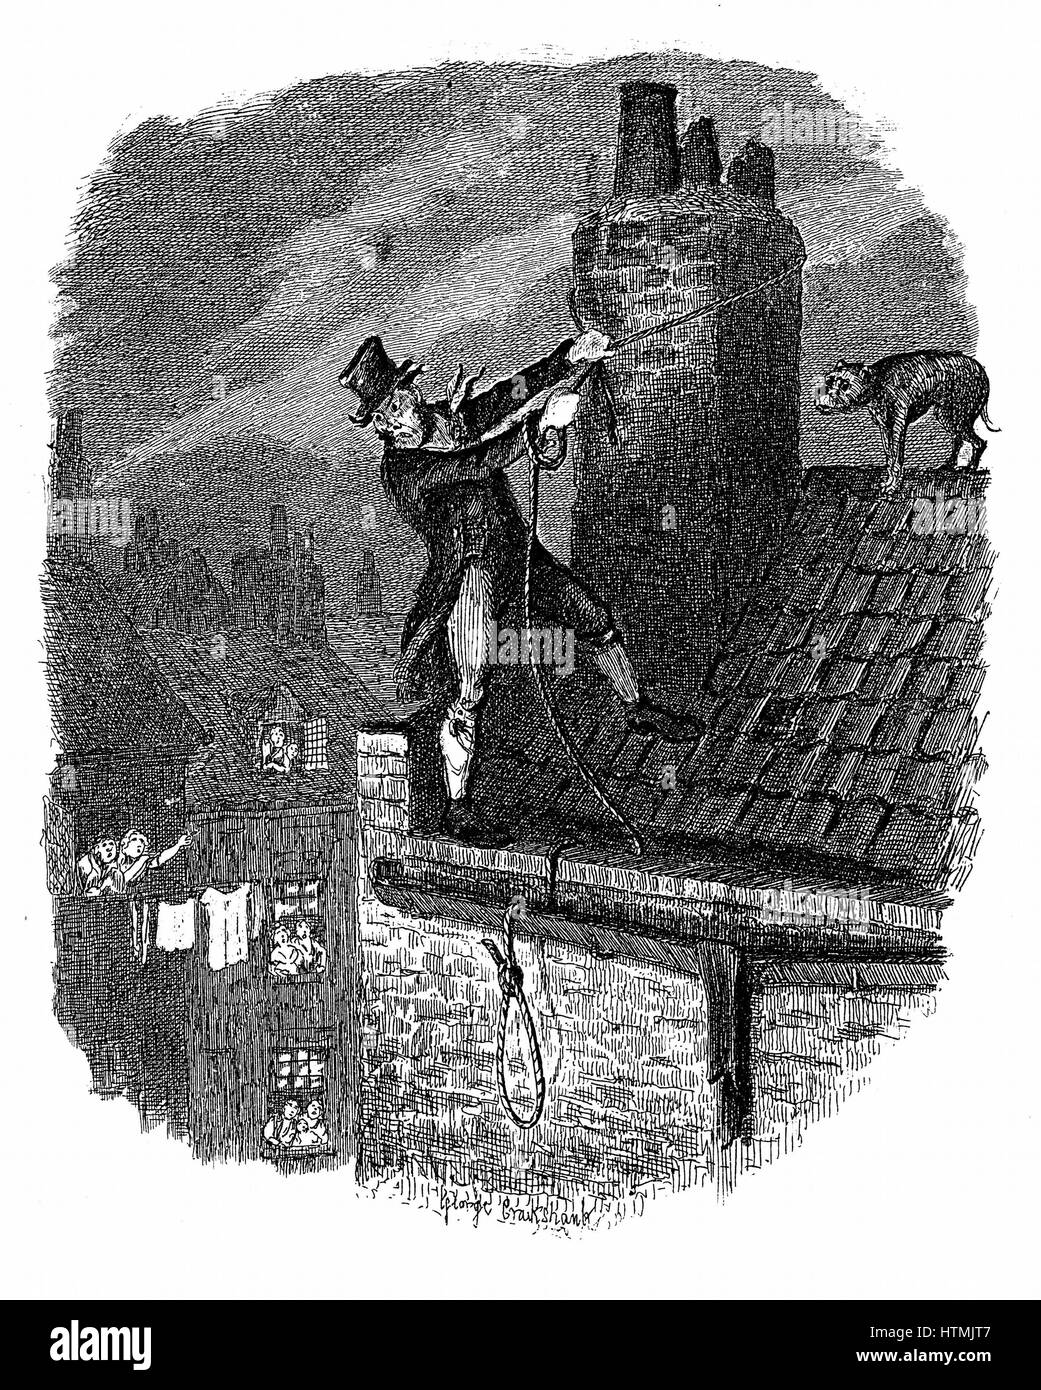 L'ultima chance: Bill Sykes il tentativo di sfuggire alla legge sui tetti, cade e si blocca se stesso con la sua corda. George Cruikshank illustrazione per Charles Dickens 'Oiliver Twist" 1837-38 di Londra. Incisione Foto Stock